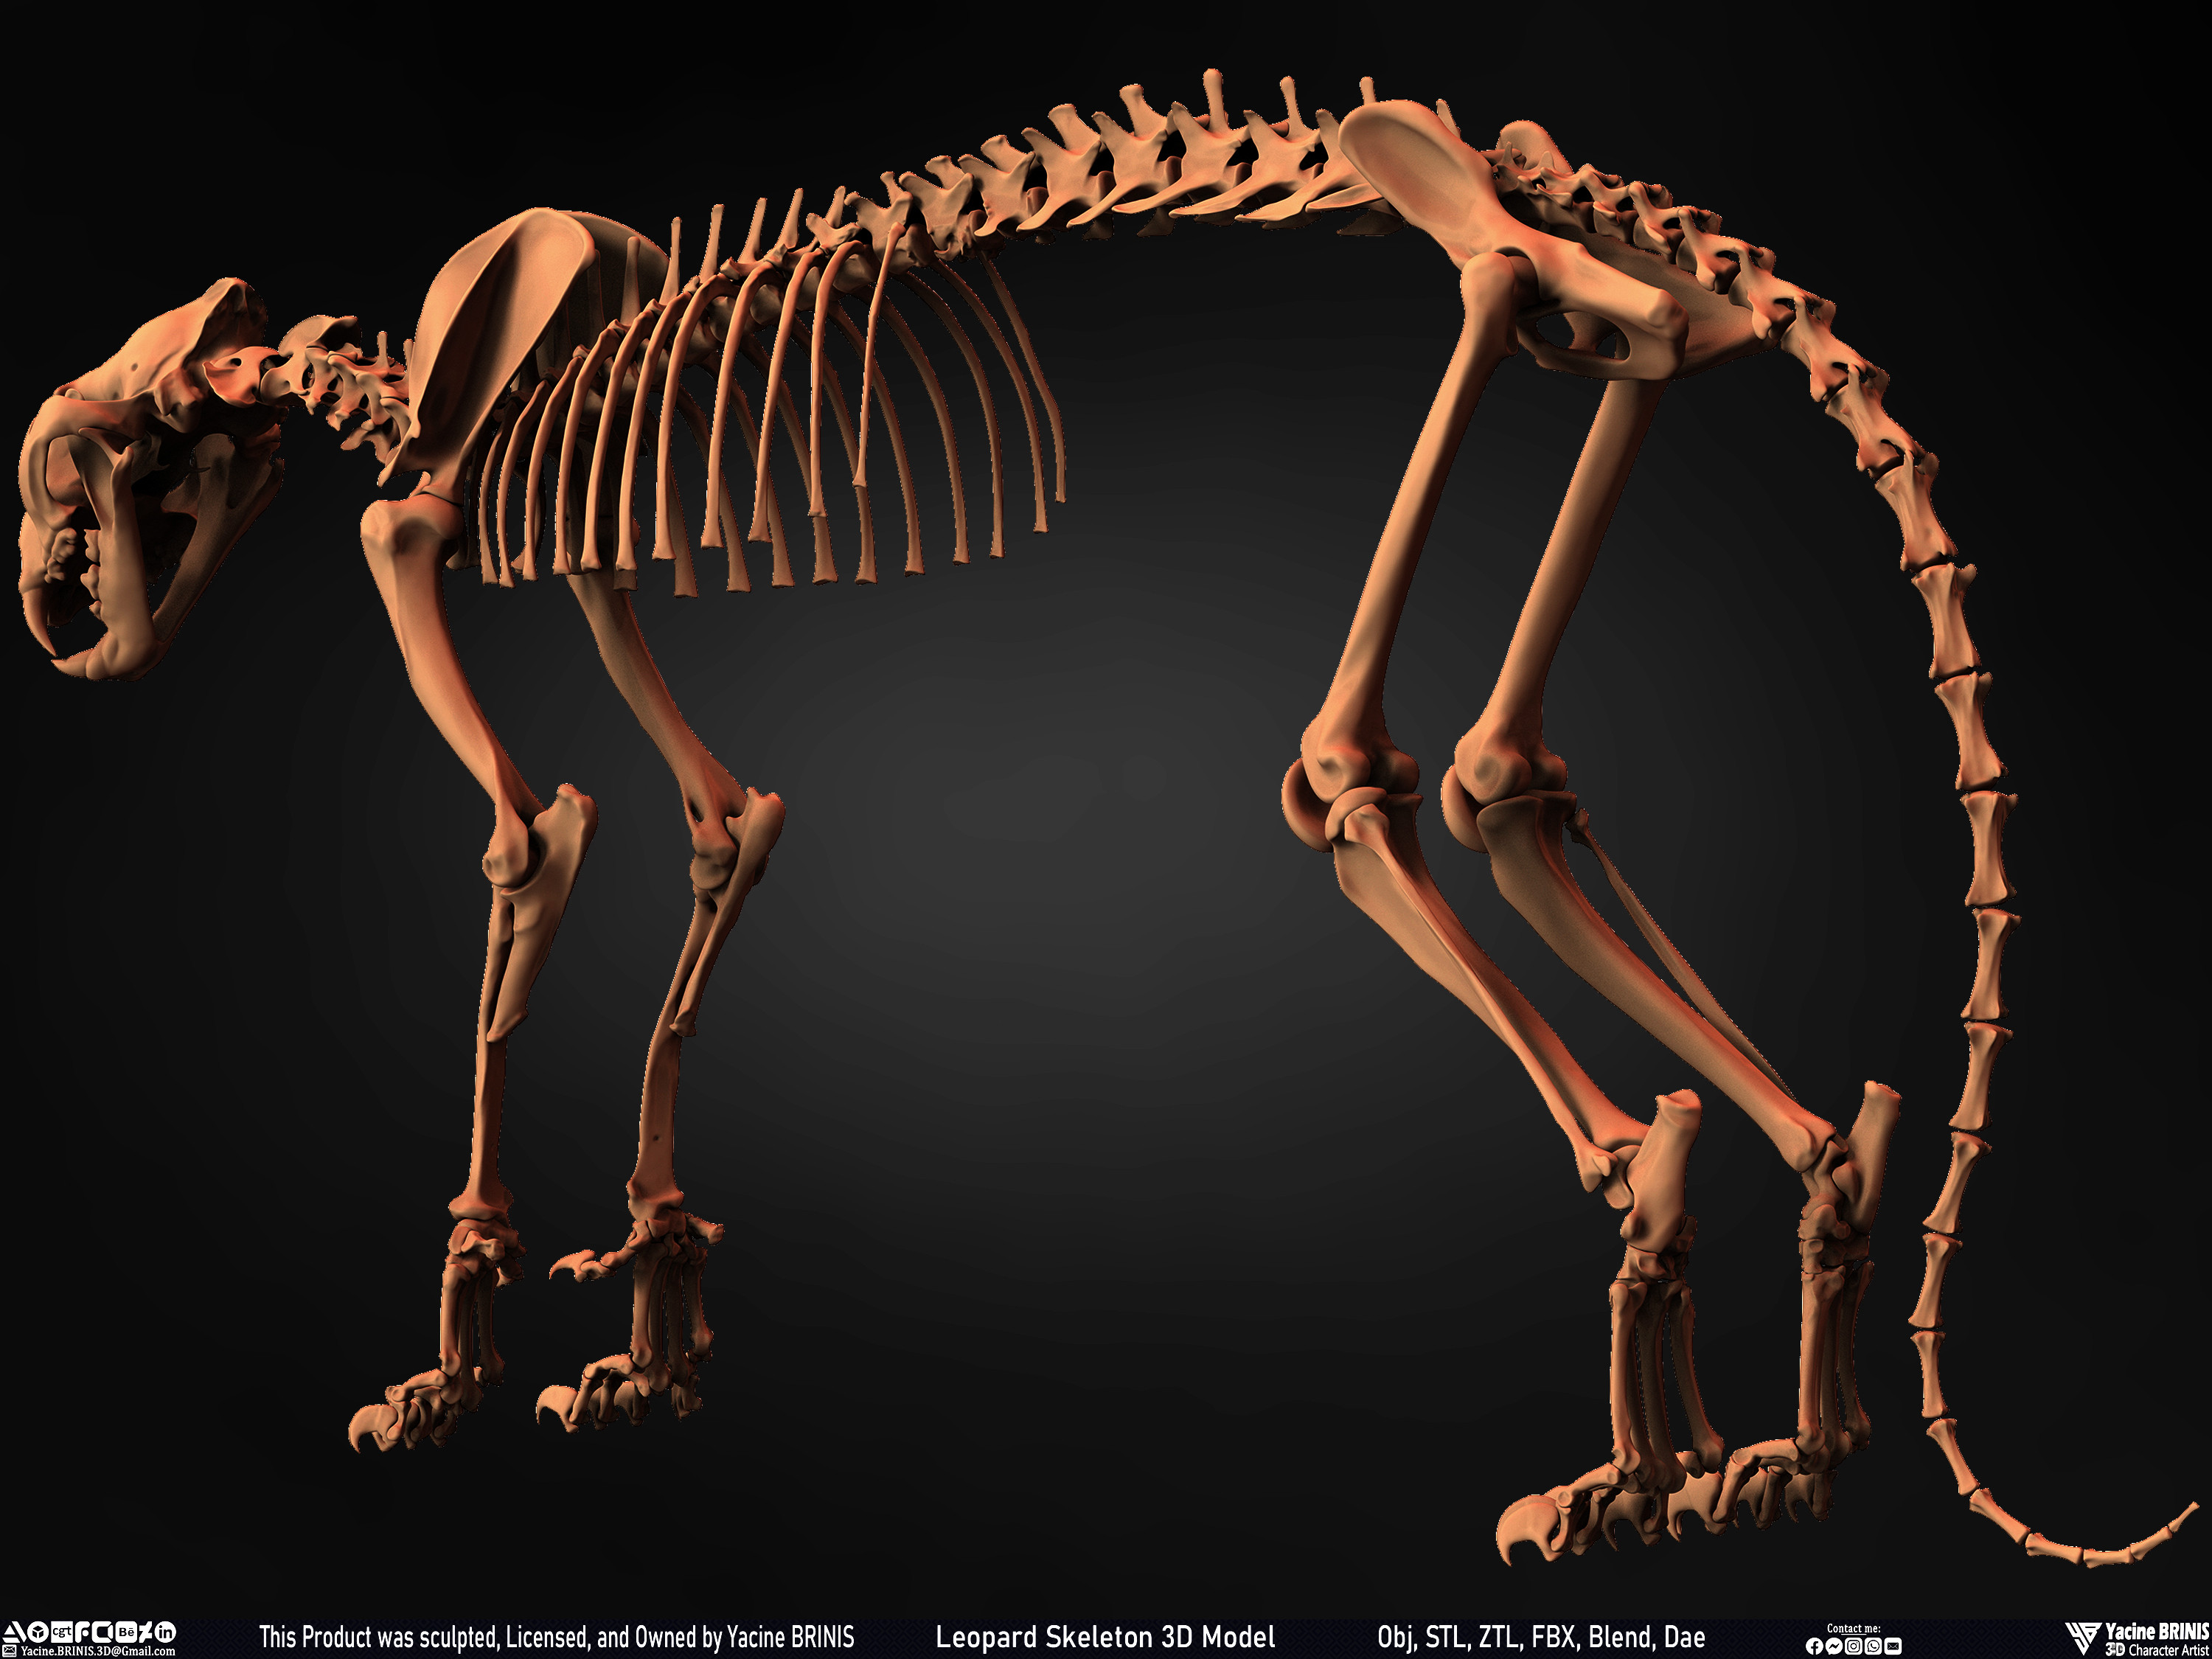 Leopard Skeleton 3D Model Sculpted By Yacine BRINIS 012